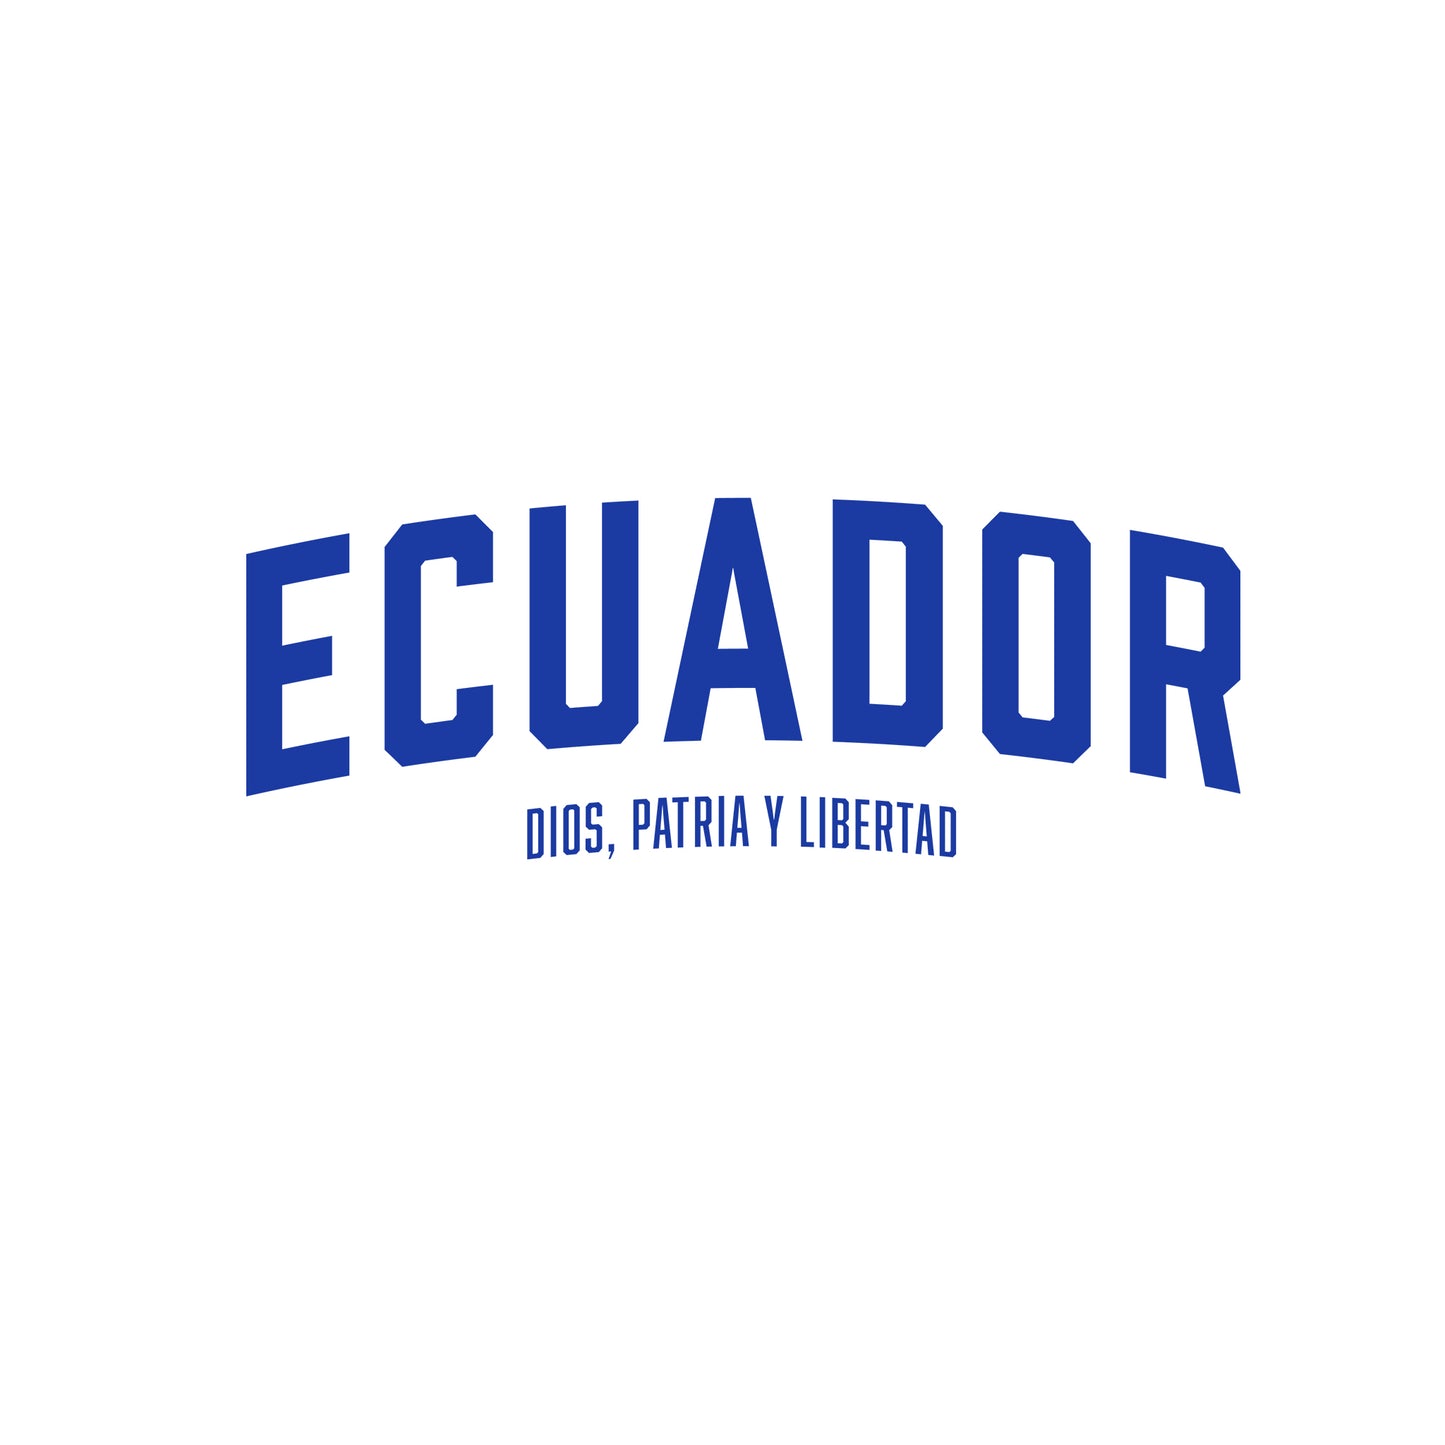 Ecuador (Unisex) Sudadera premium